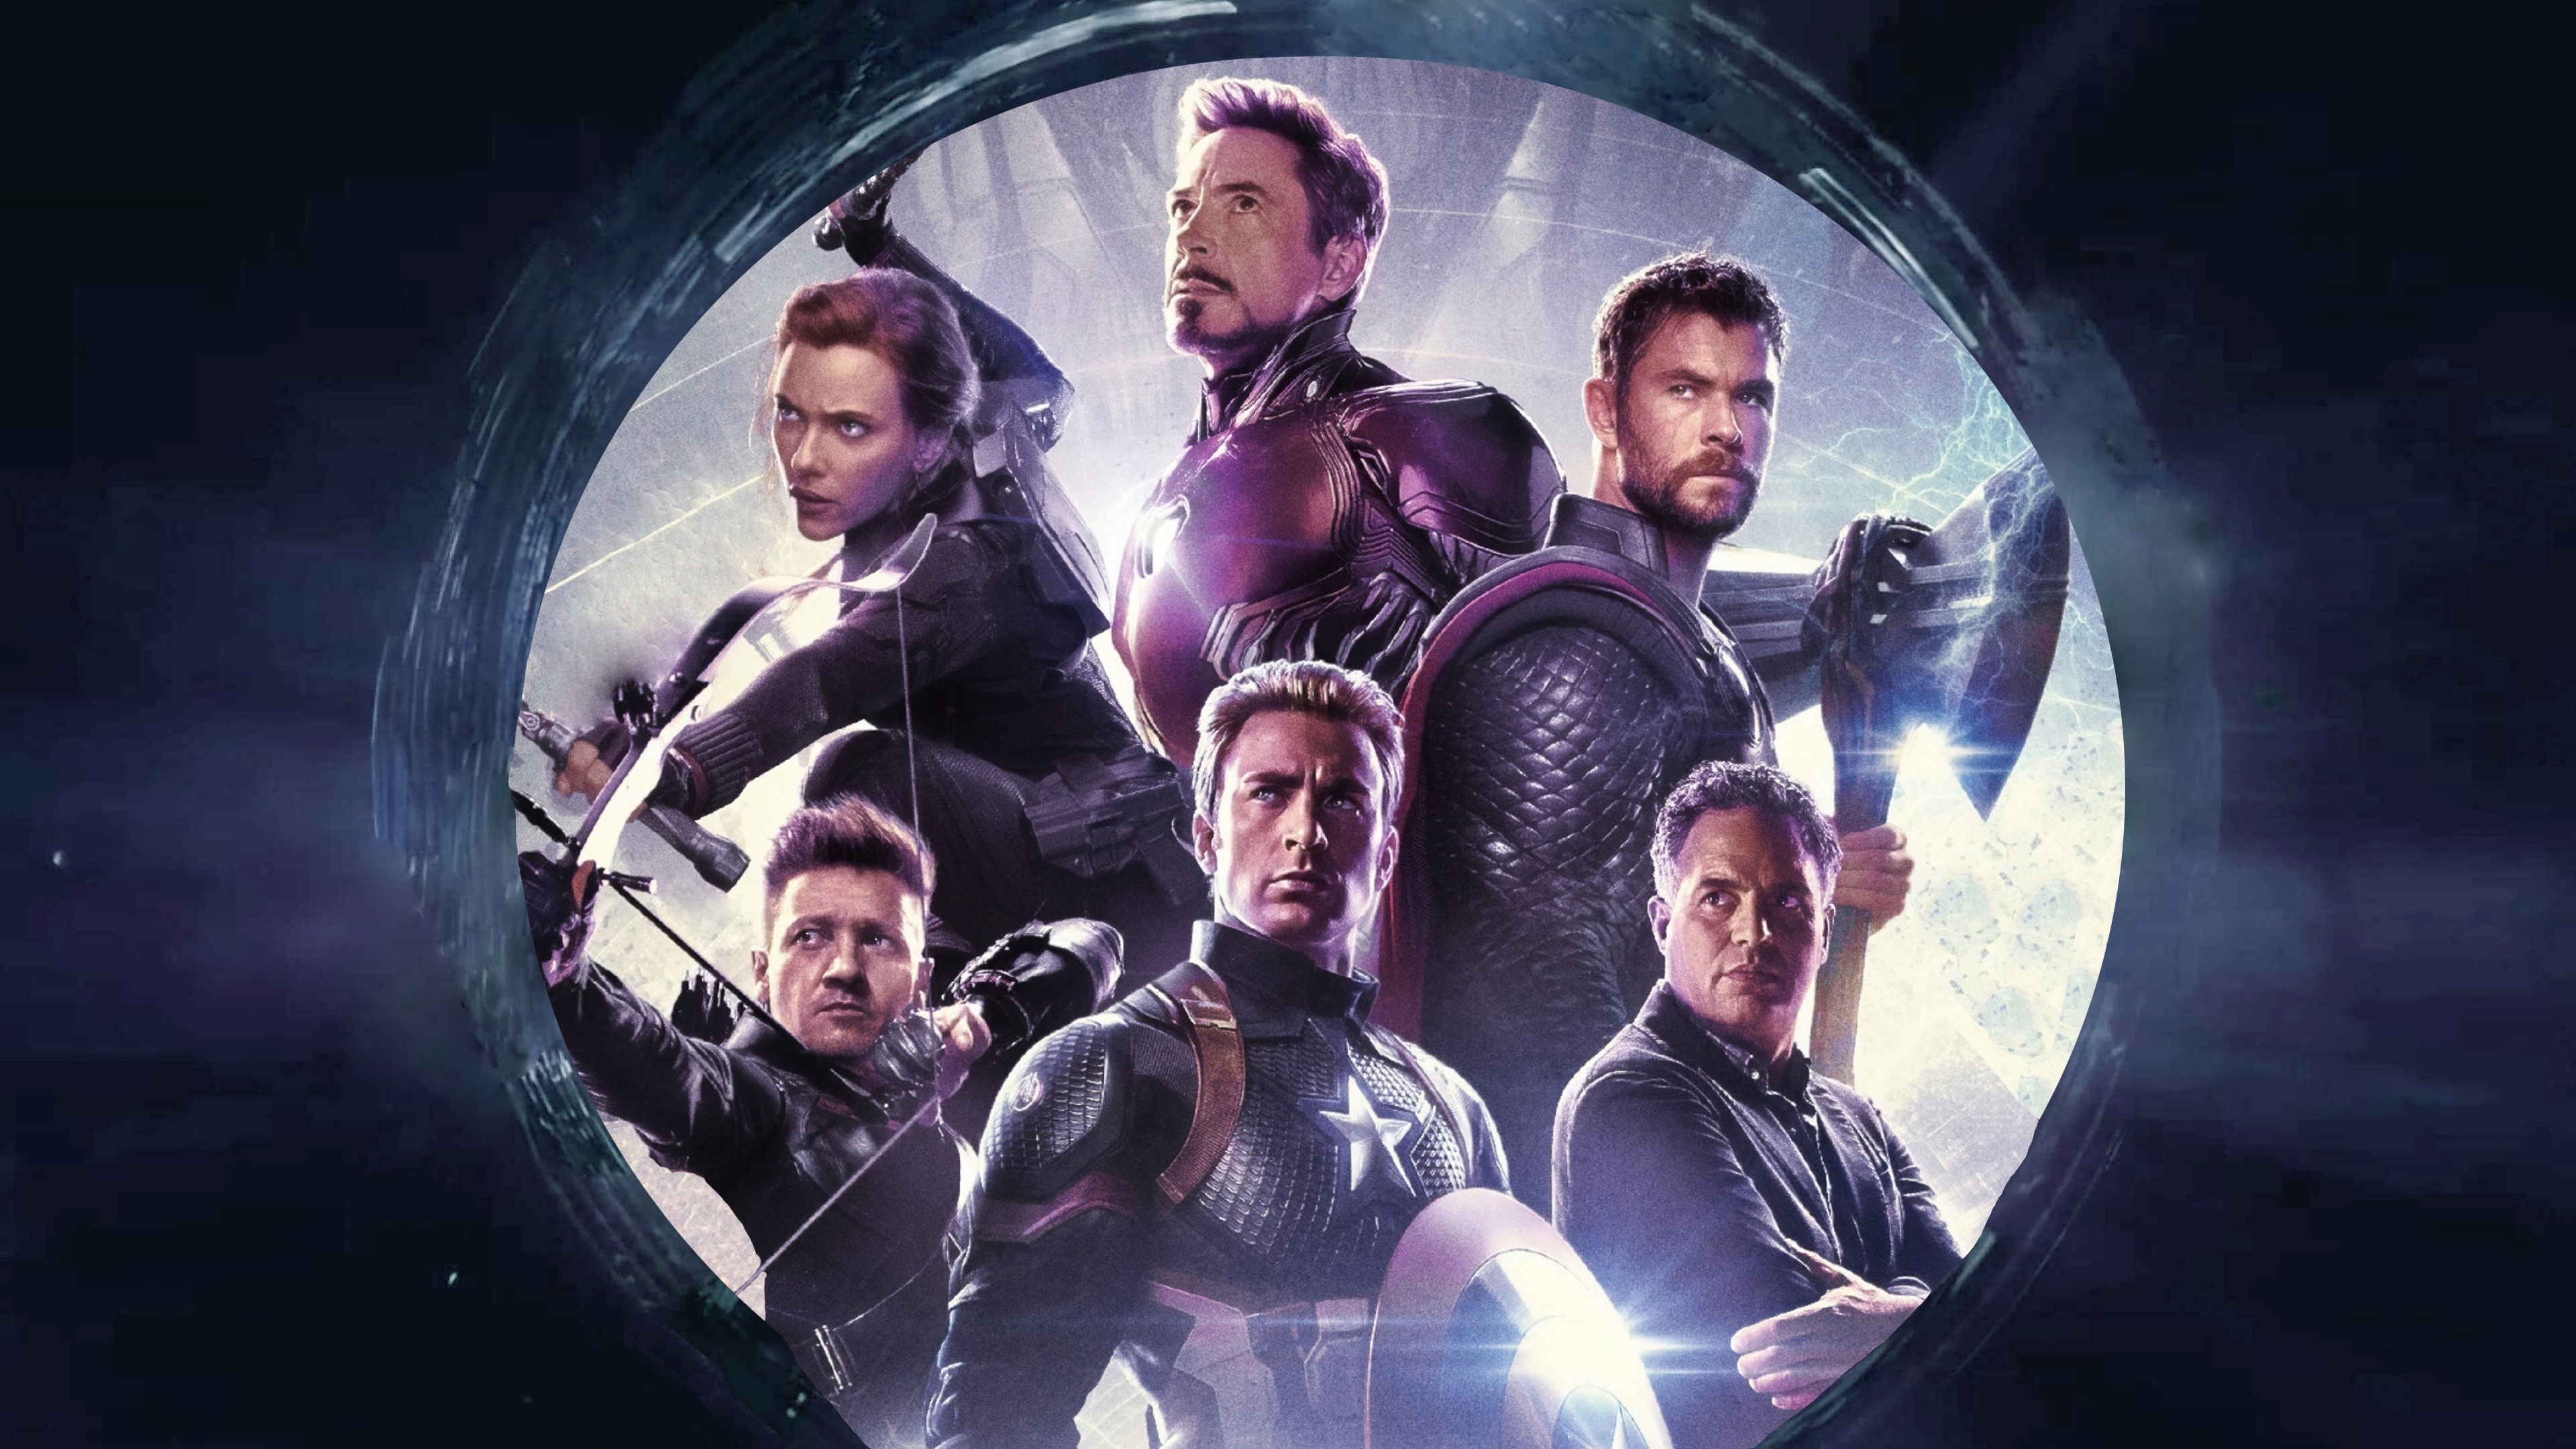 4k 2019 avengers endgame original six 1560535075 - 4k 2019 Avengers Endgame Original Six - movies wallpapers, hd-wallpapers, avengers endgame wallpapers, 4k-wallpapers, 2019 movies wallpapers